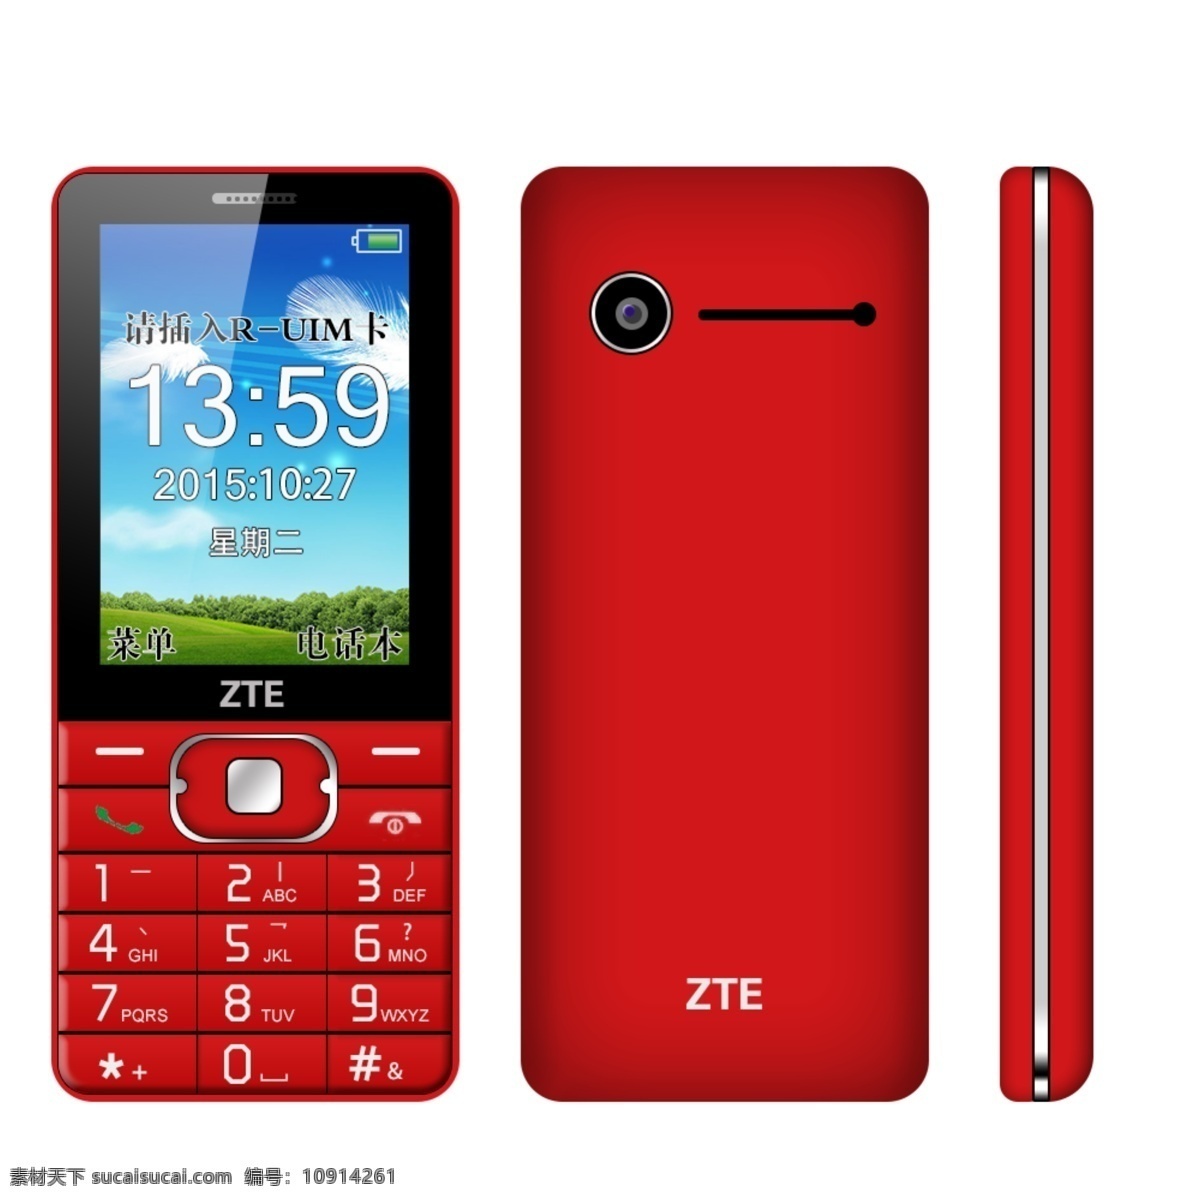 产品模型 手机模型 红色 键盘 手机 模型 手机id 白色